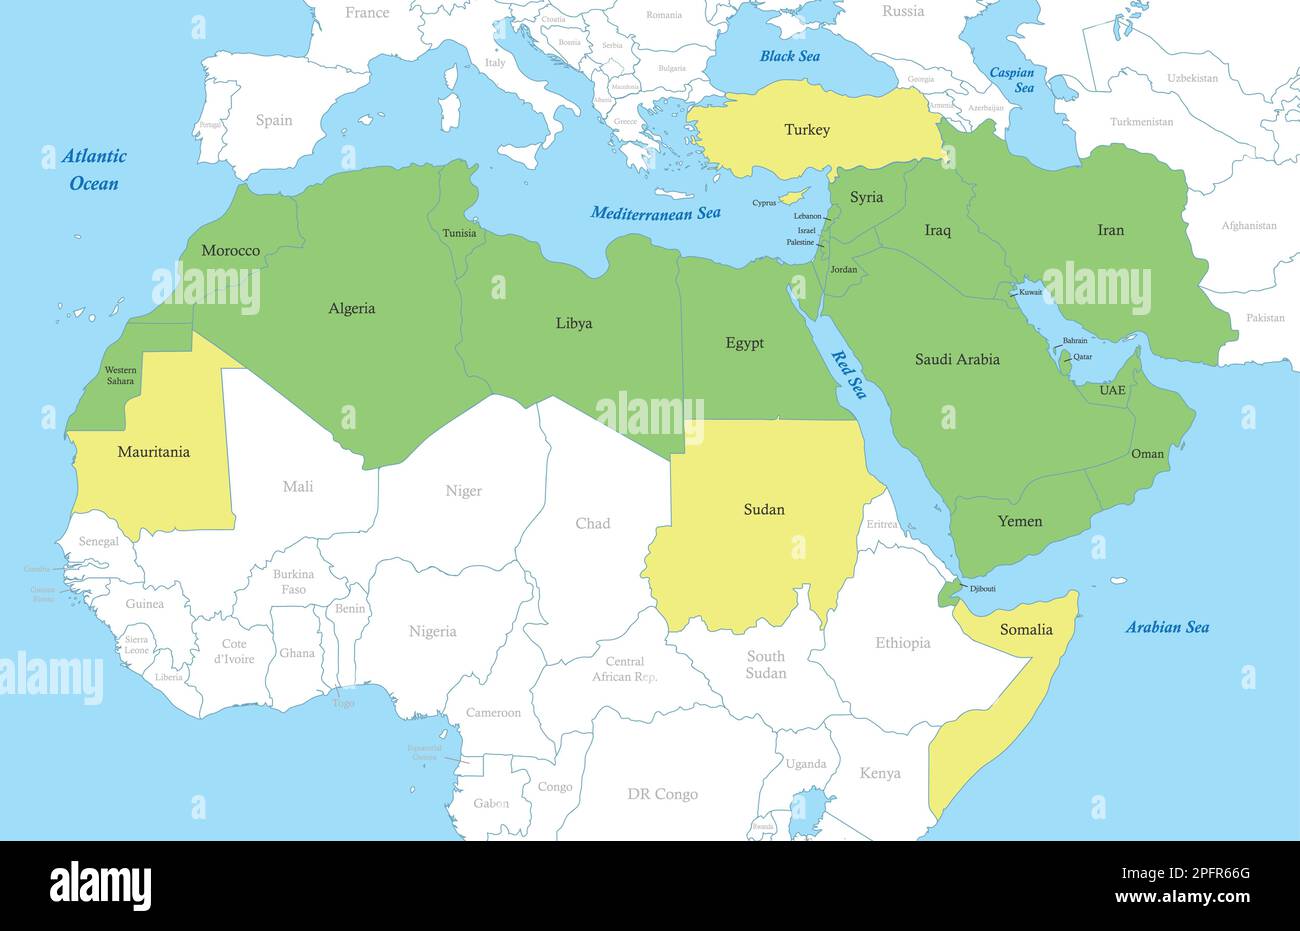 Mappa a colori politica della regione MENA con i confini degli stati. Medio Oriente e Nord Africa Illustrazione Vettoriale